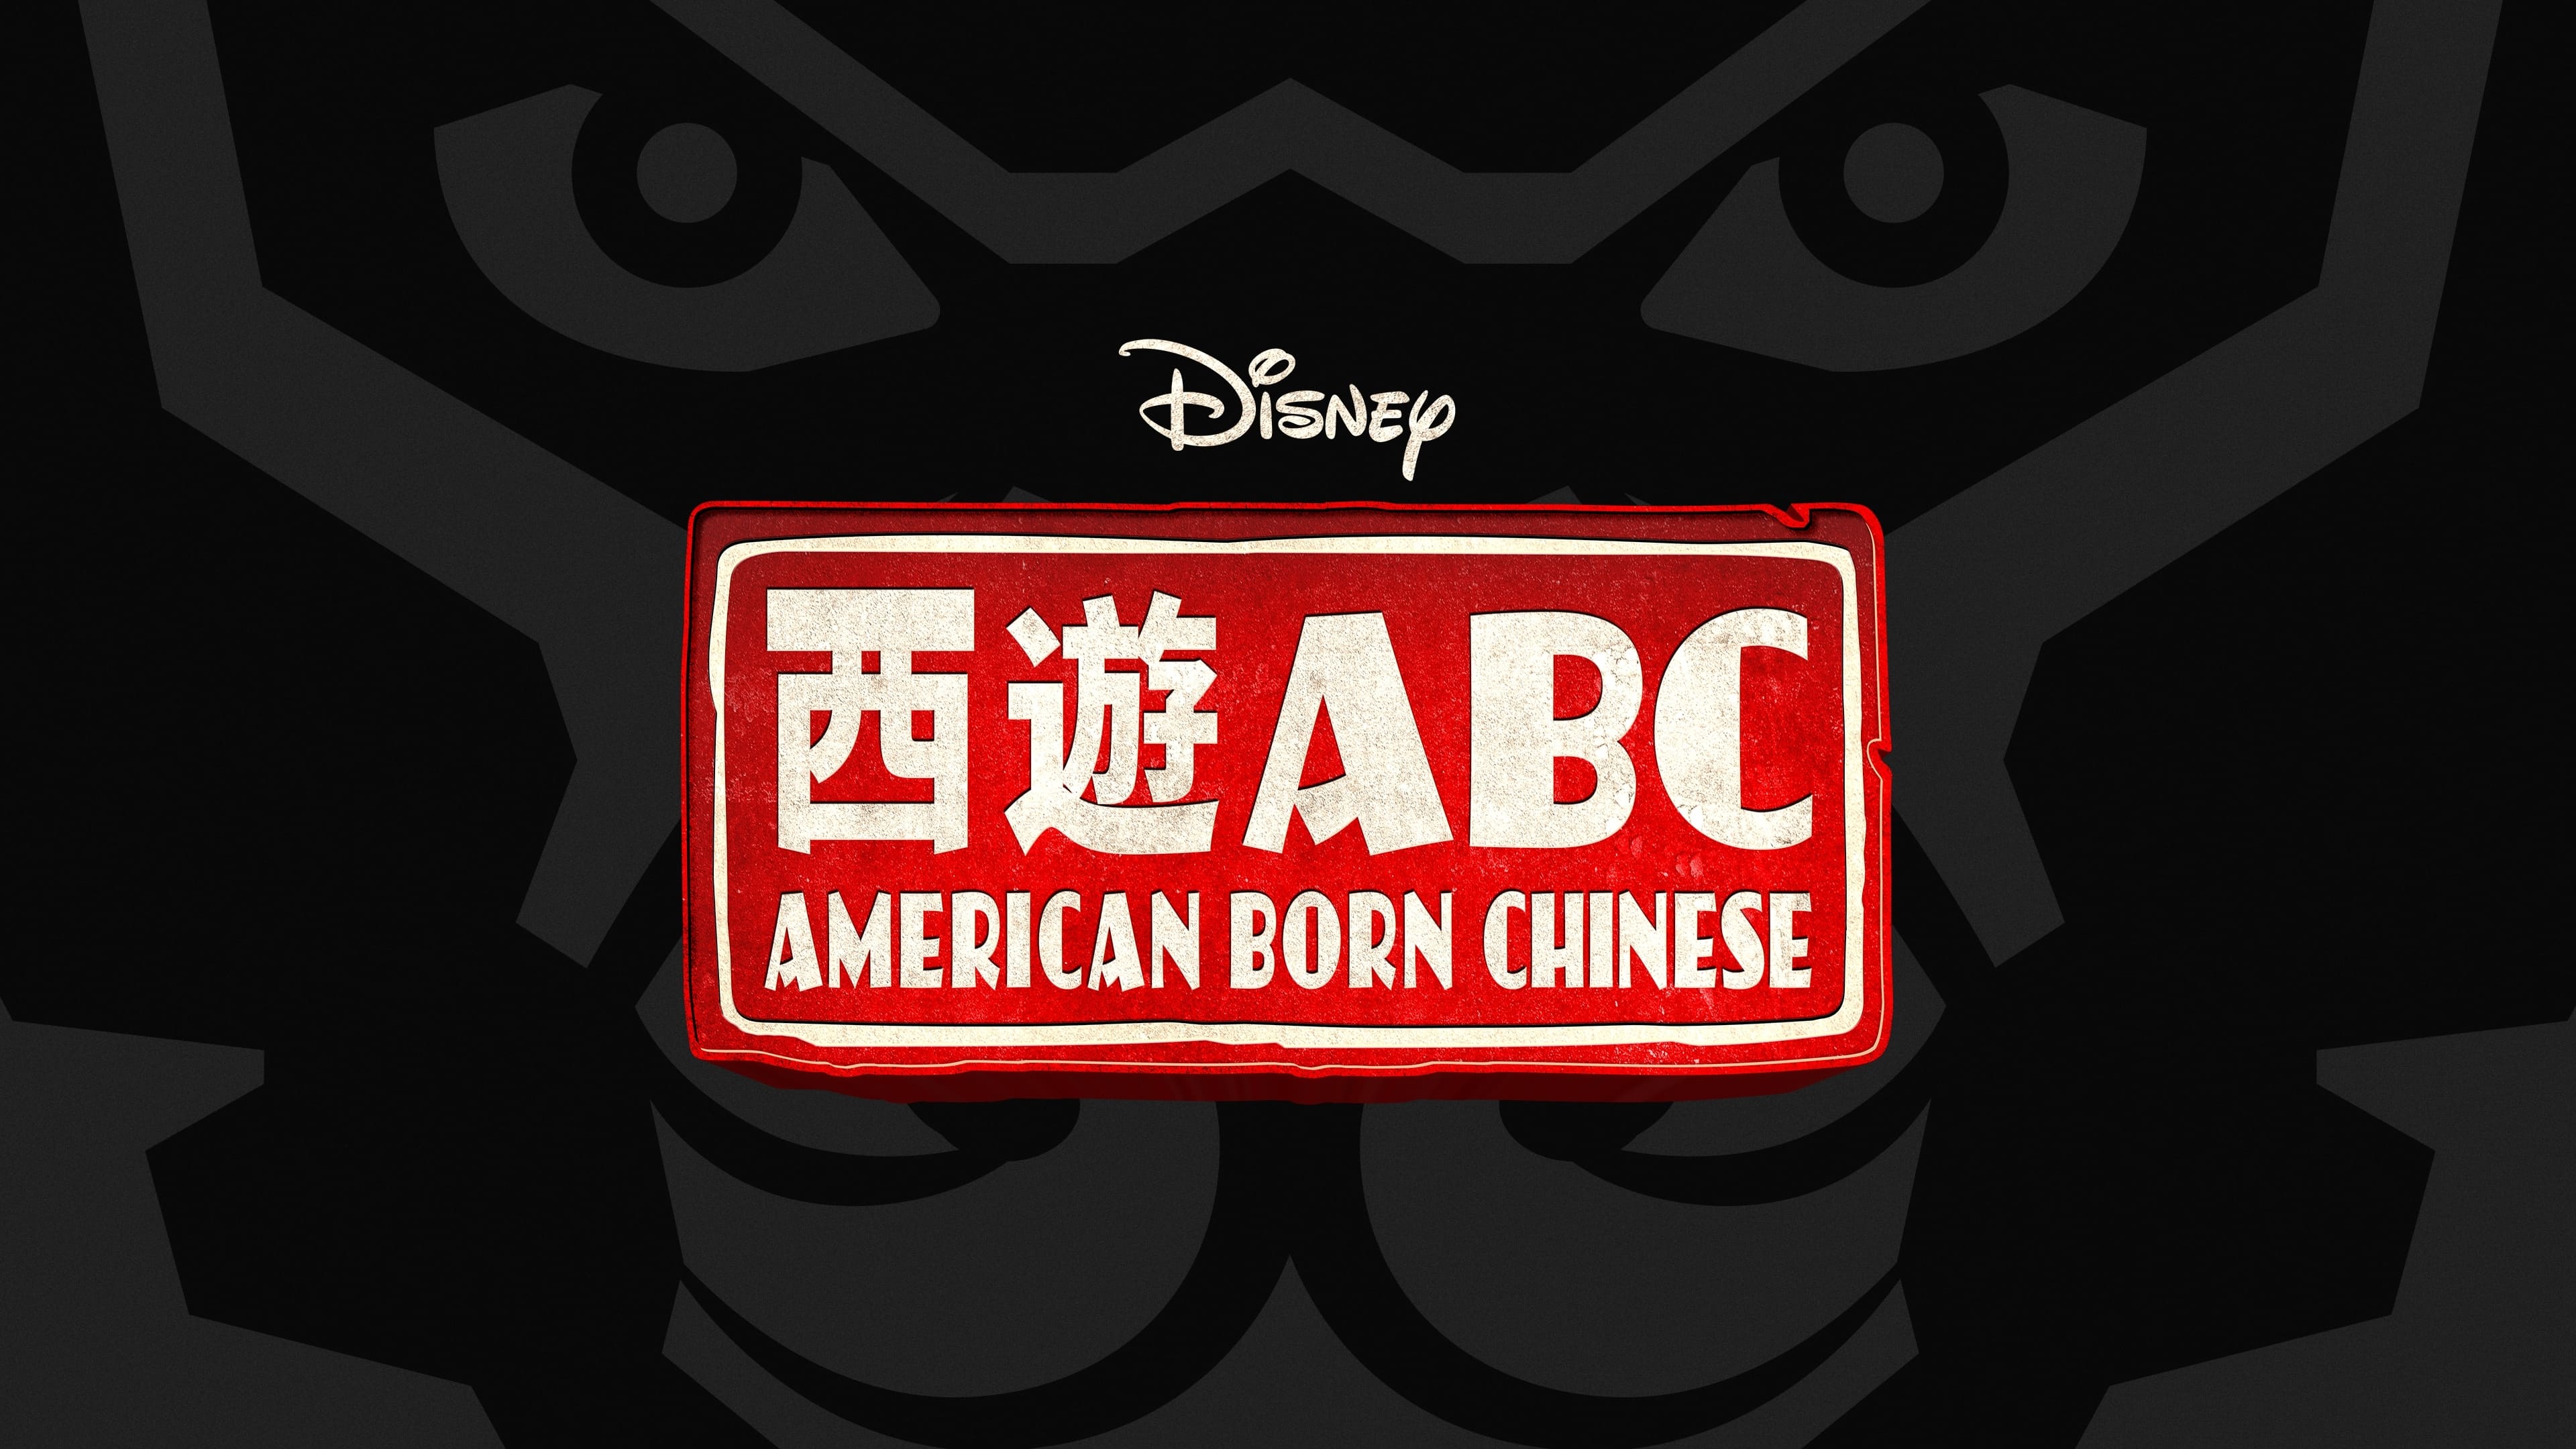 Chino americano: La serie